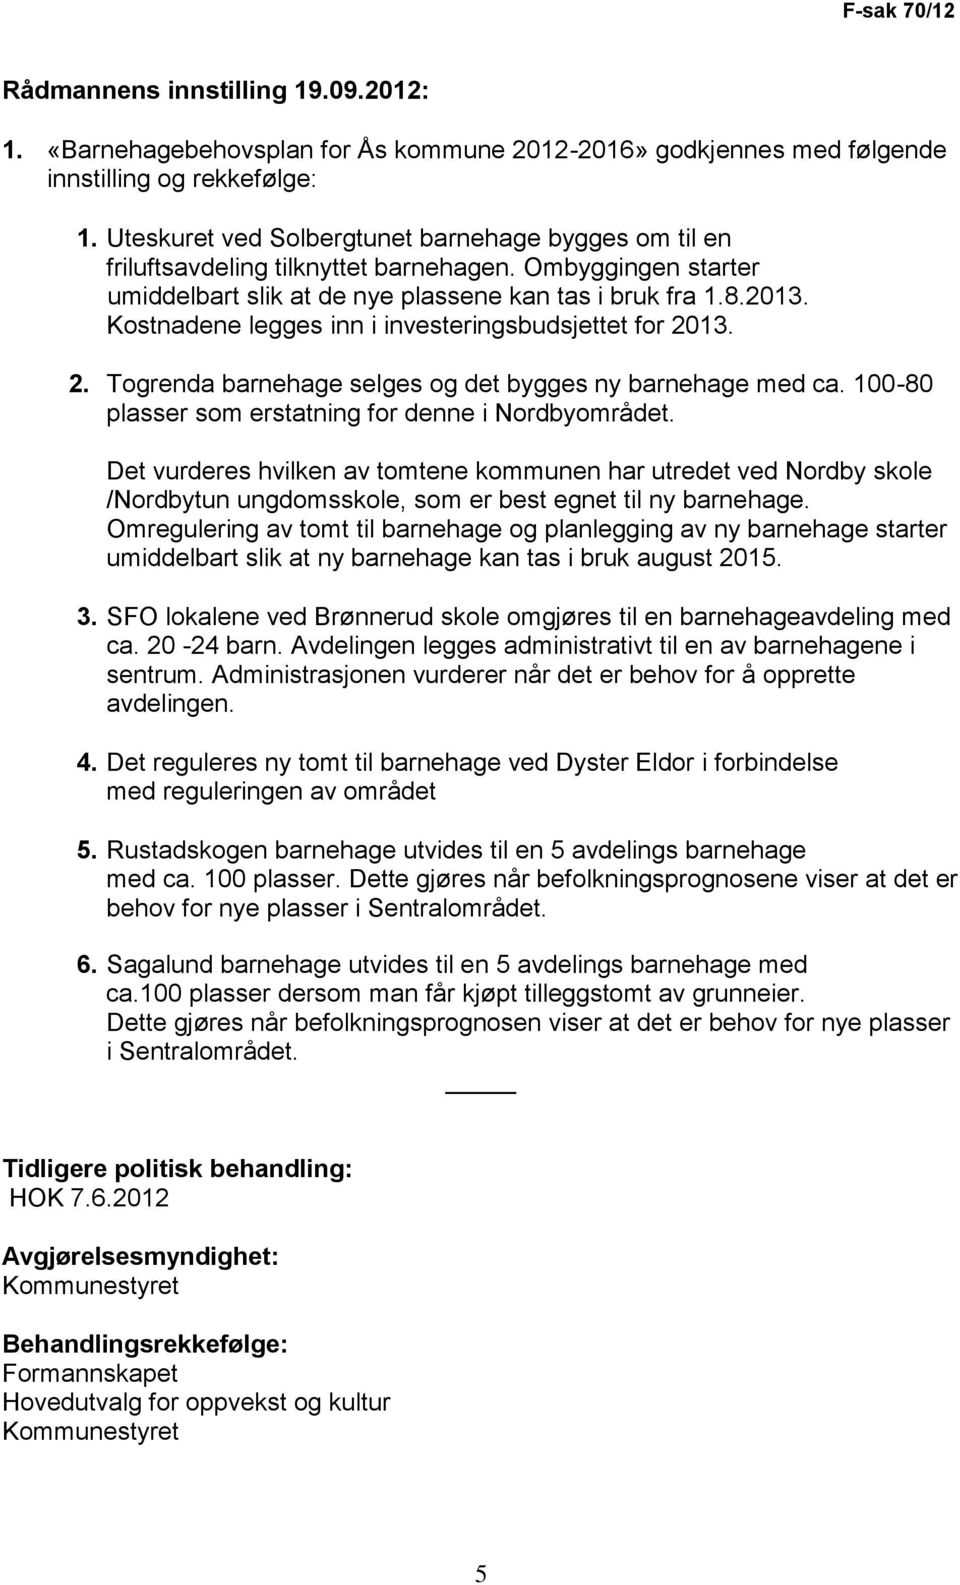 Kostnadene legges inn i investeringsbudsjettet for 2013. 2. Togrenda barnehage selges og det bygges ny barnehage med ca. 100-80 plasser som erstatning for denne i Nordbyområdet.